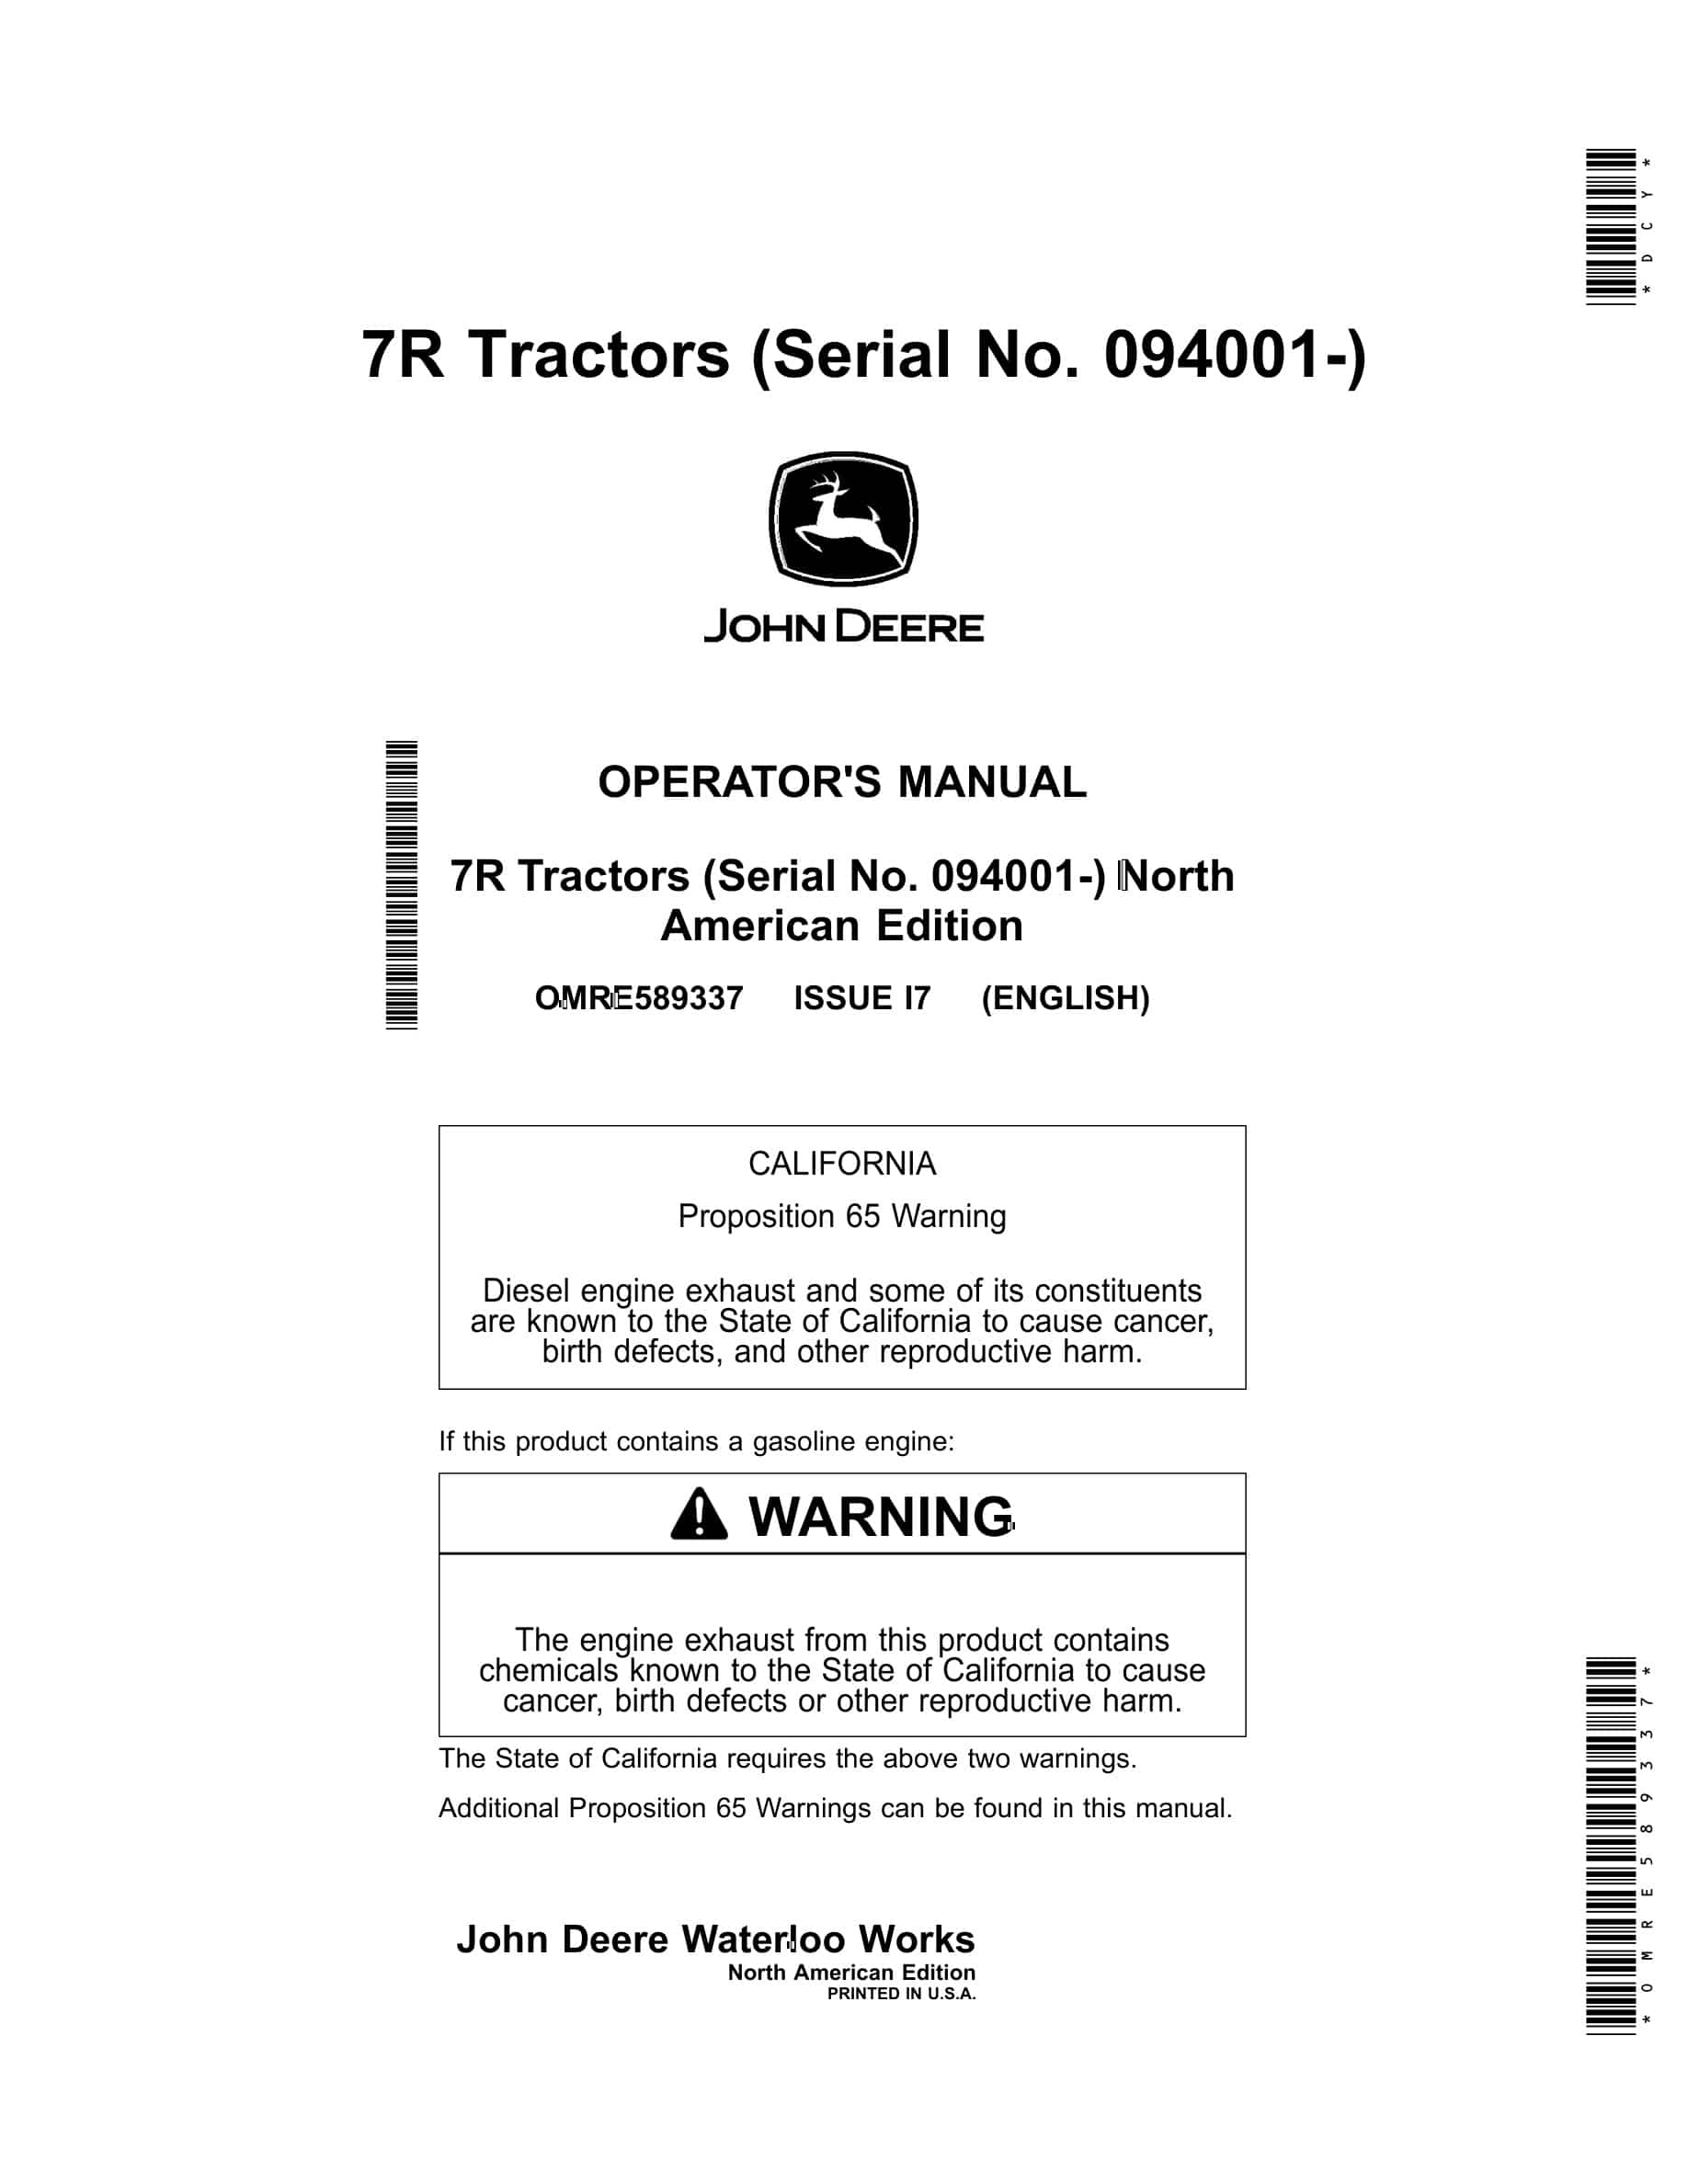 John Deere 7R Tractor Operator Manual OMRE589337-1